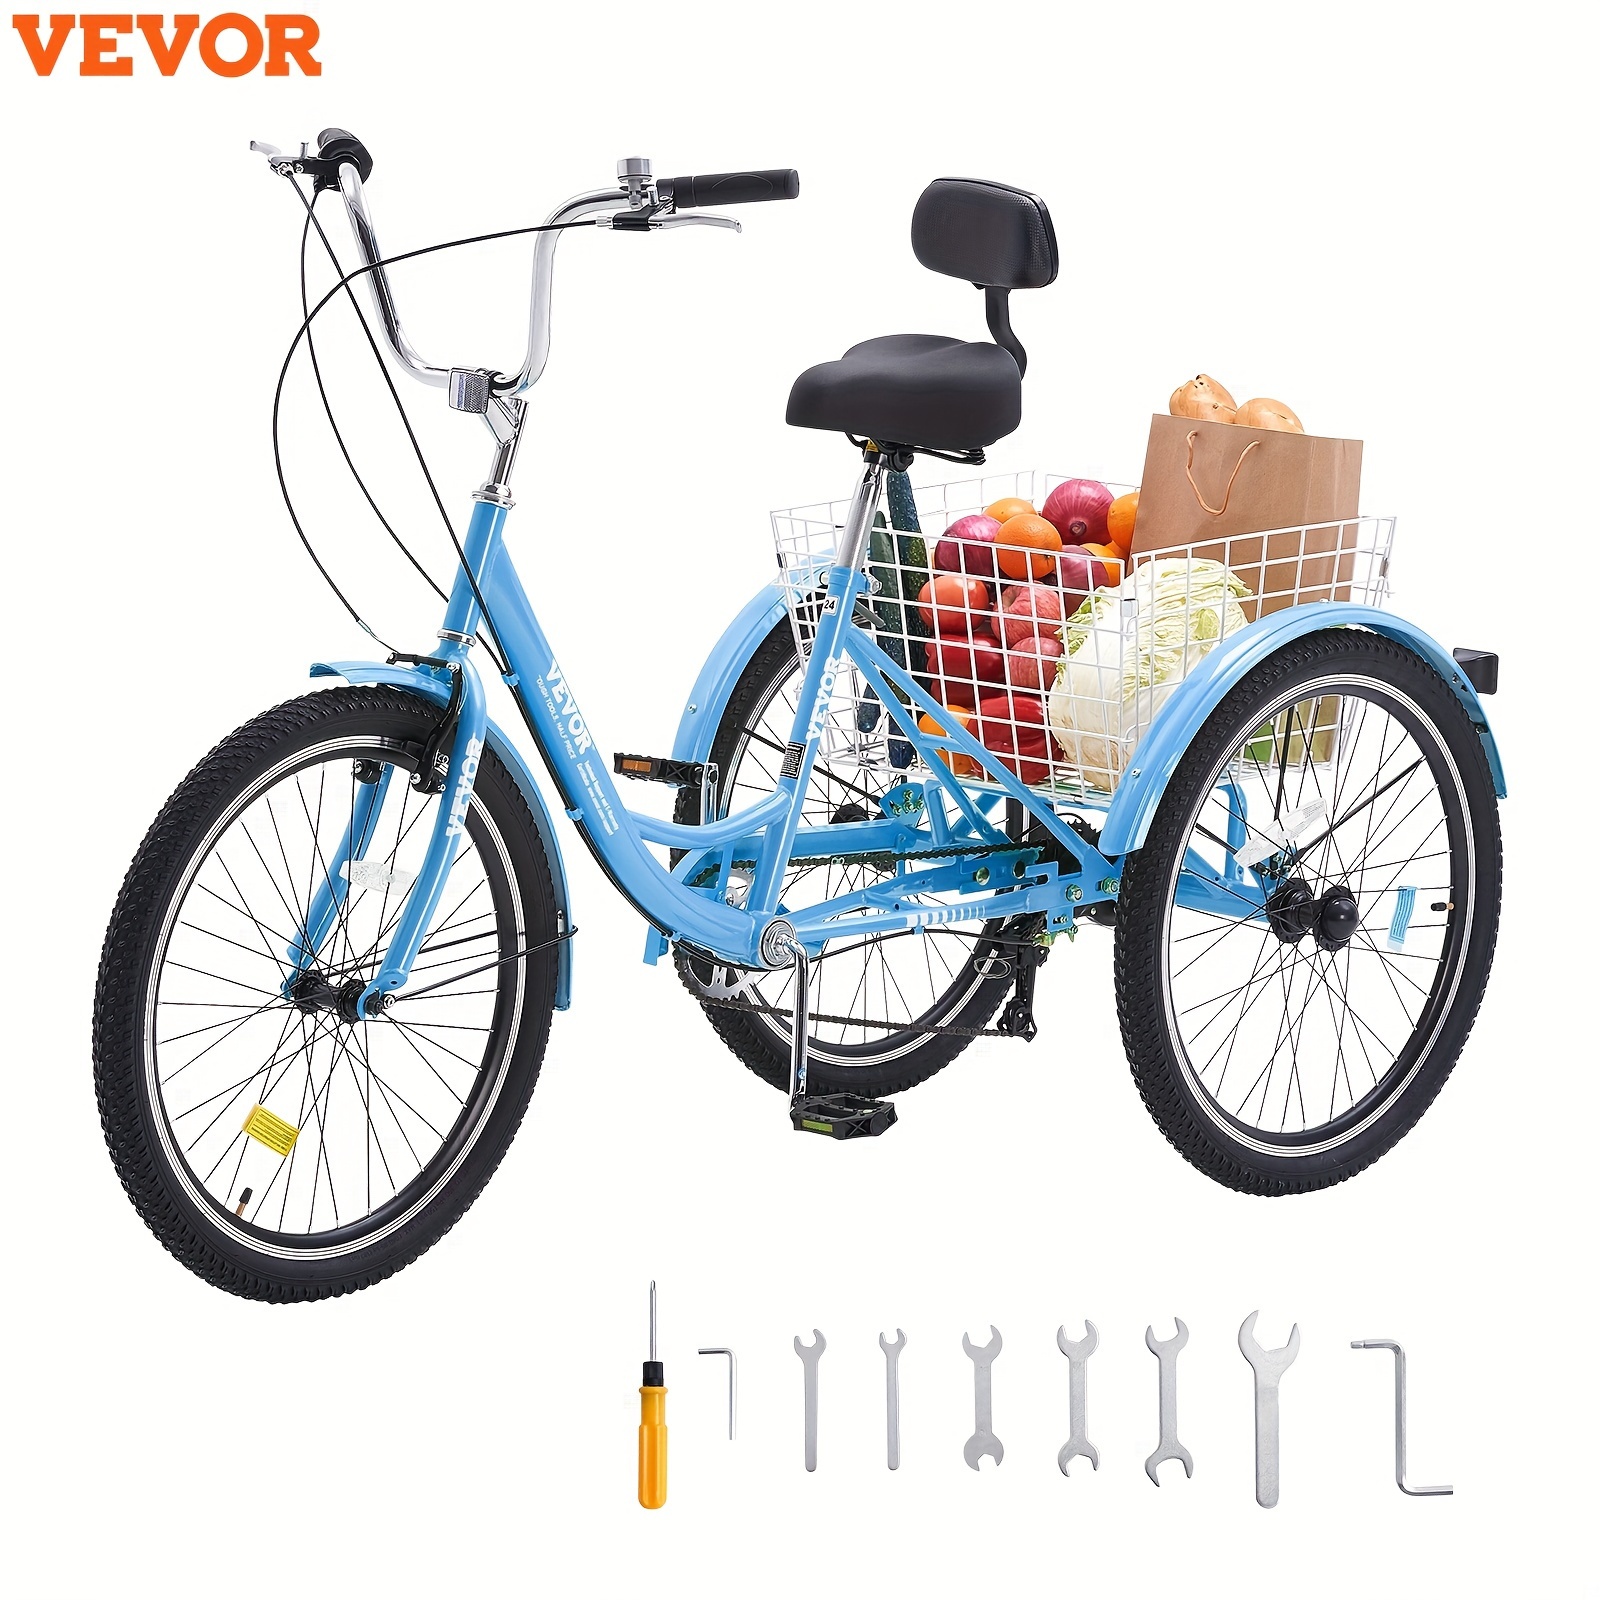 

Vevor 24" Adult Tricycles Bike Trike Bicycle 7 Speed 3 Wheel Blue Carbon Steel